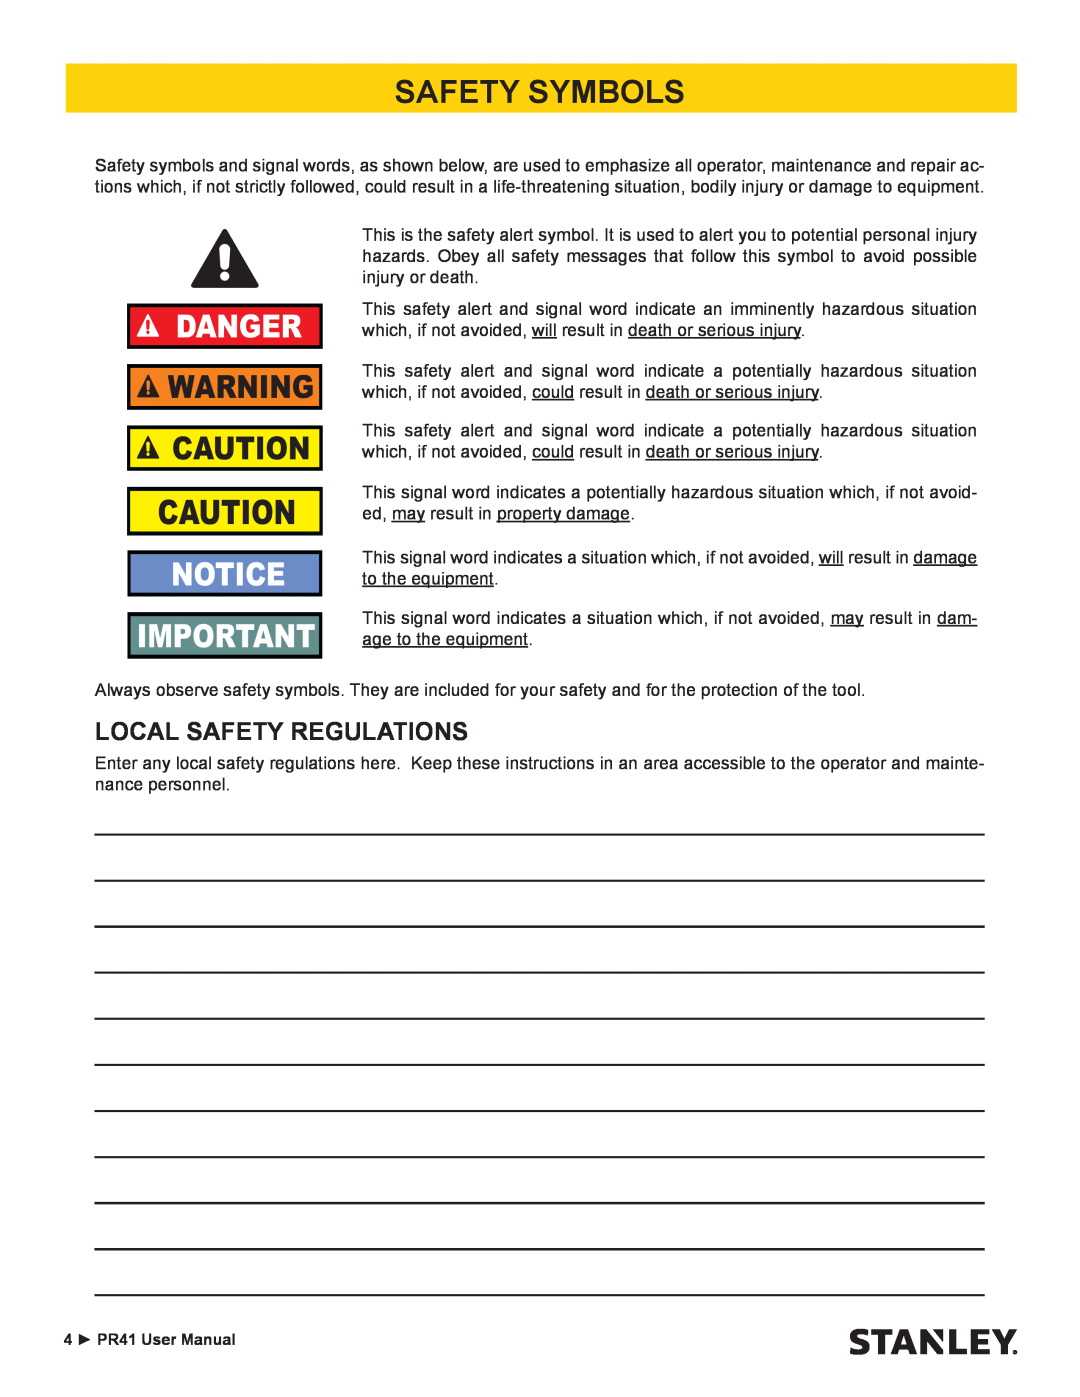 Stanley Black & Decker PR41 manual Safety Symbols, Local Safety Regulations, Danger 